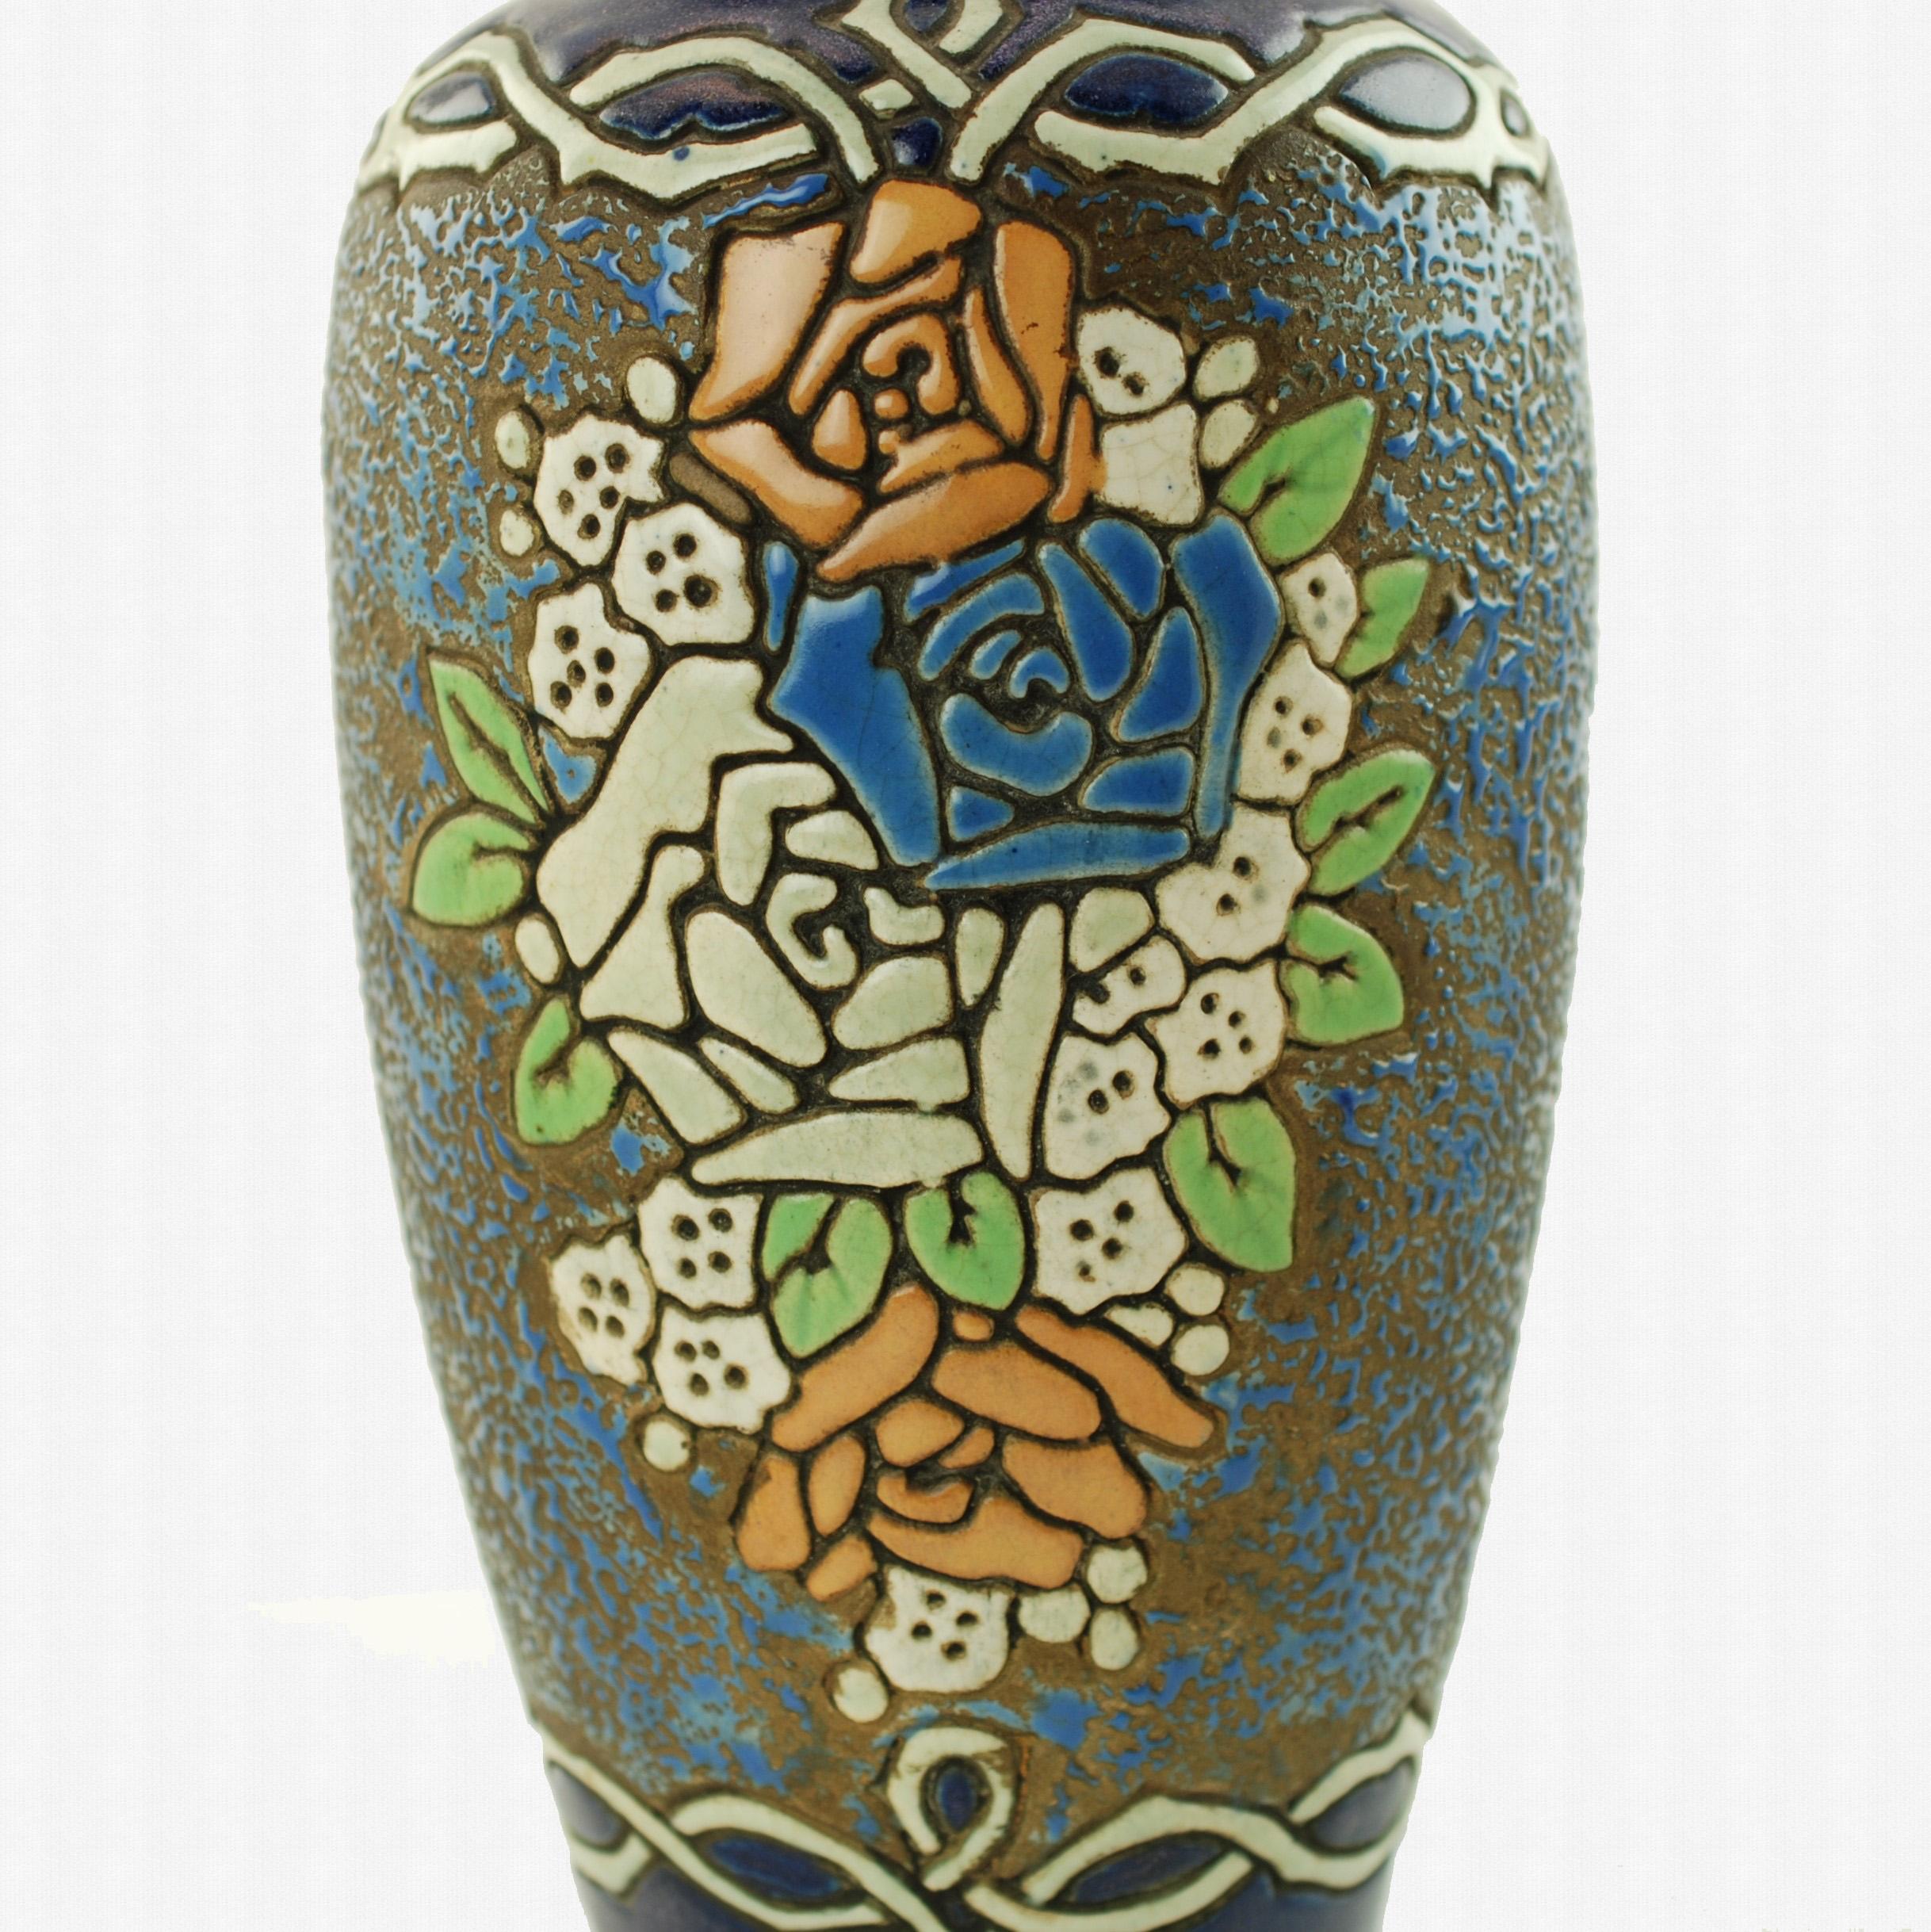 amphora vase for sale